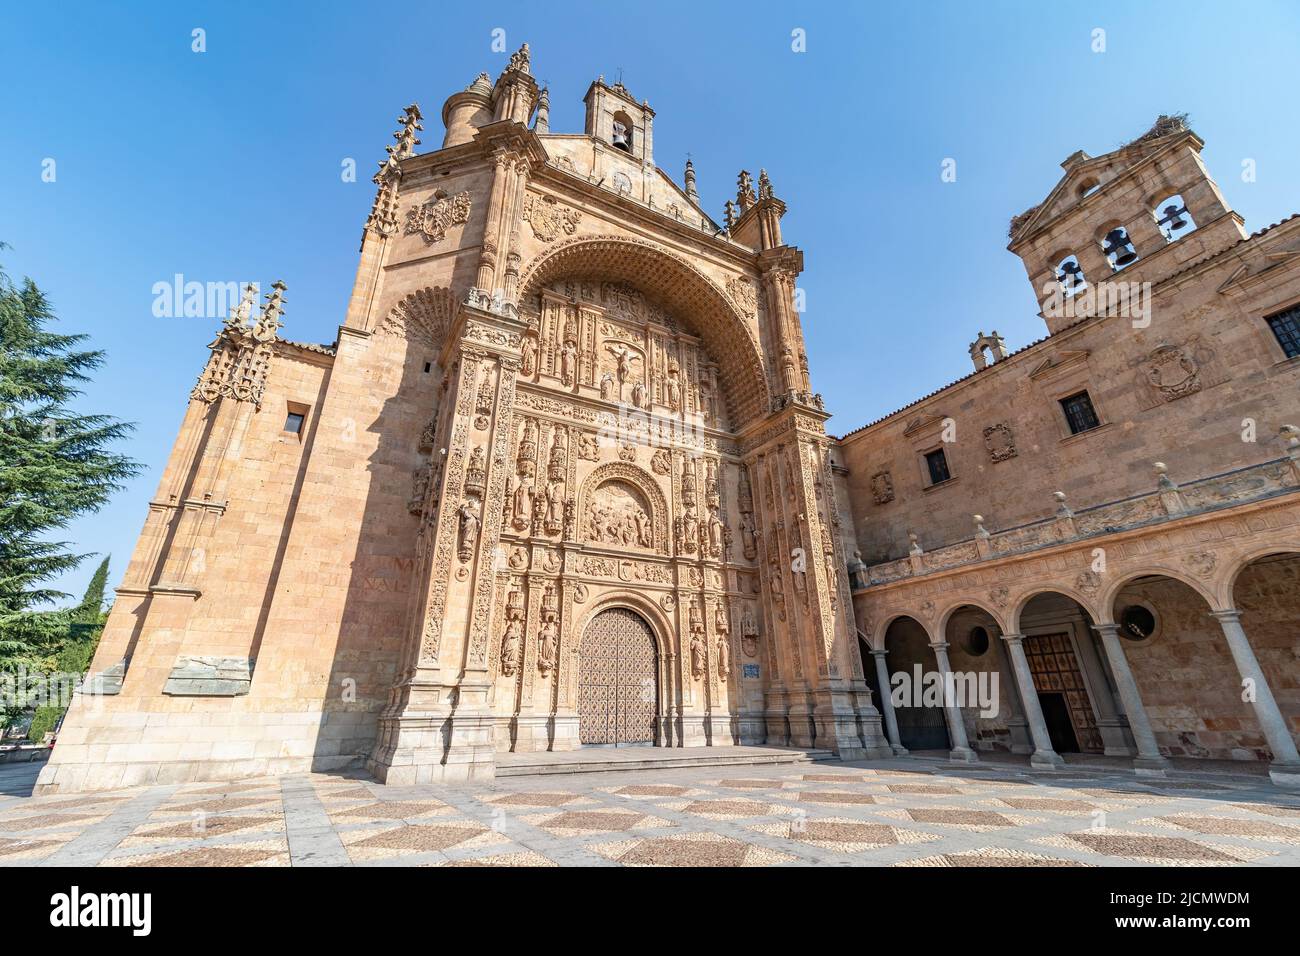 Entrada principal al convento de San Esteban en Salamanca. El convento de San Esteban es un convento dominicano situado en la ciudad de Salamanca, en la plaza Foto de stock